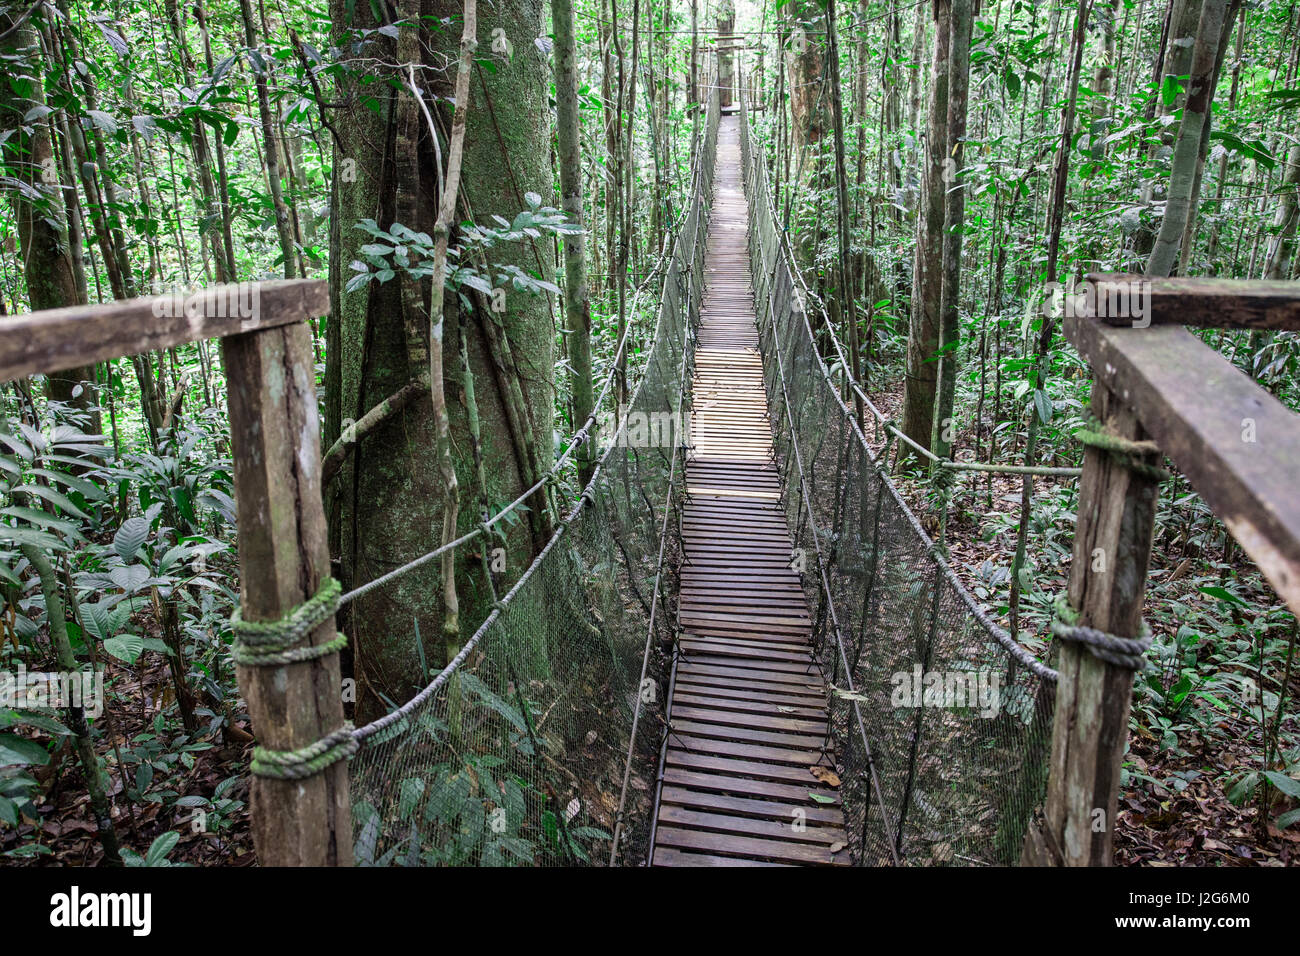 Einer der eine Reihe von Brücken überqueren den Regenwald im Amazonas-Naturpark. Stockfoto